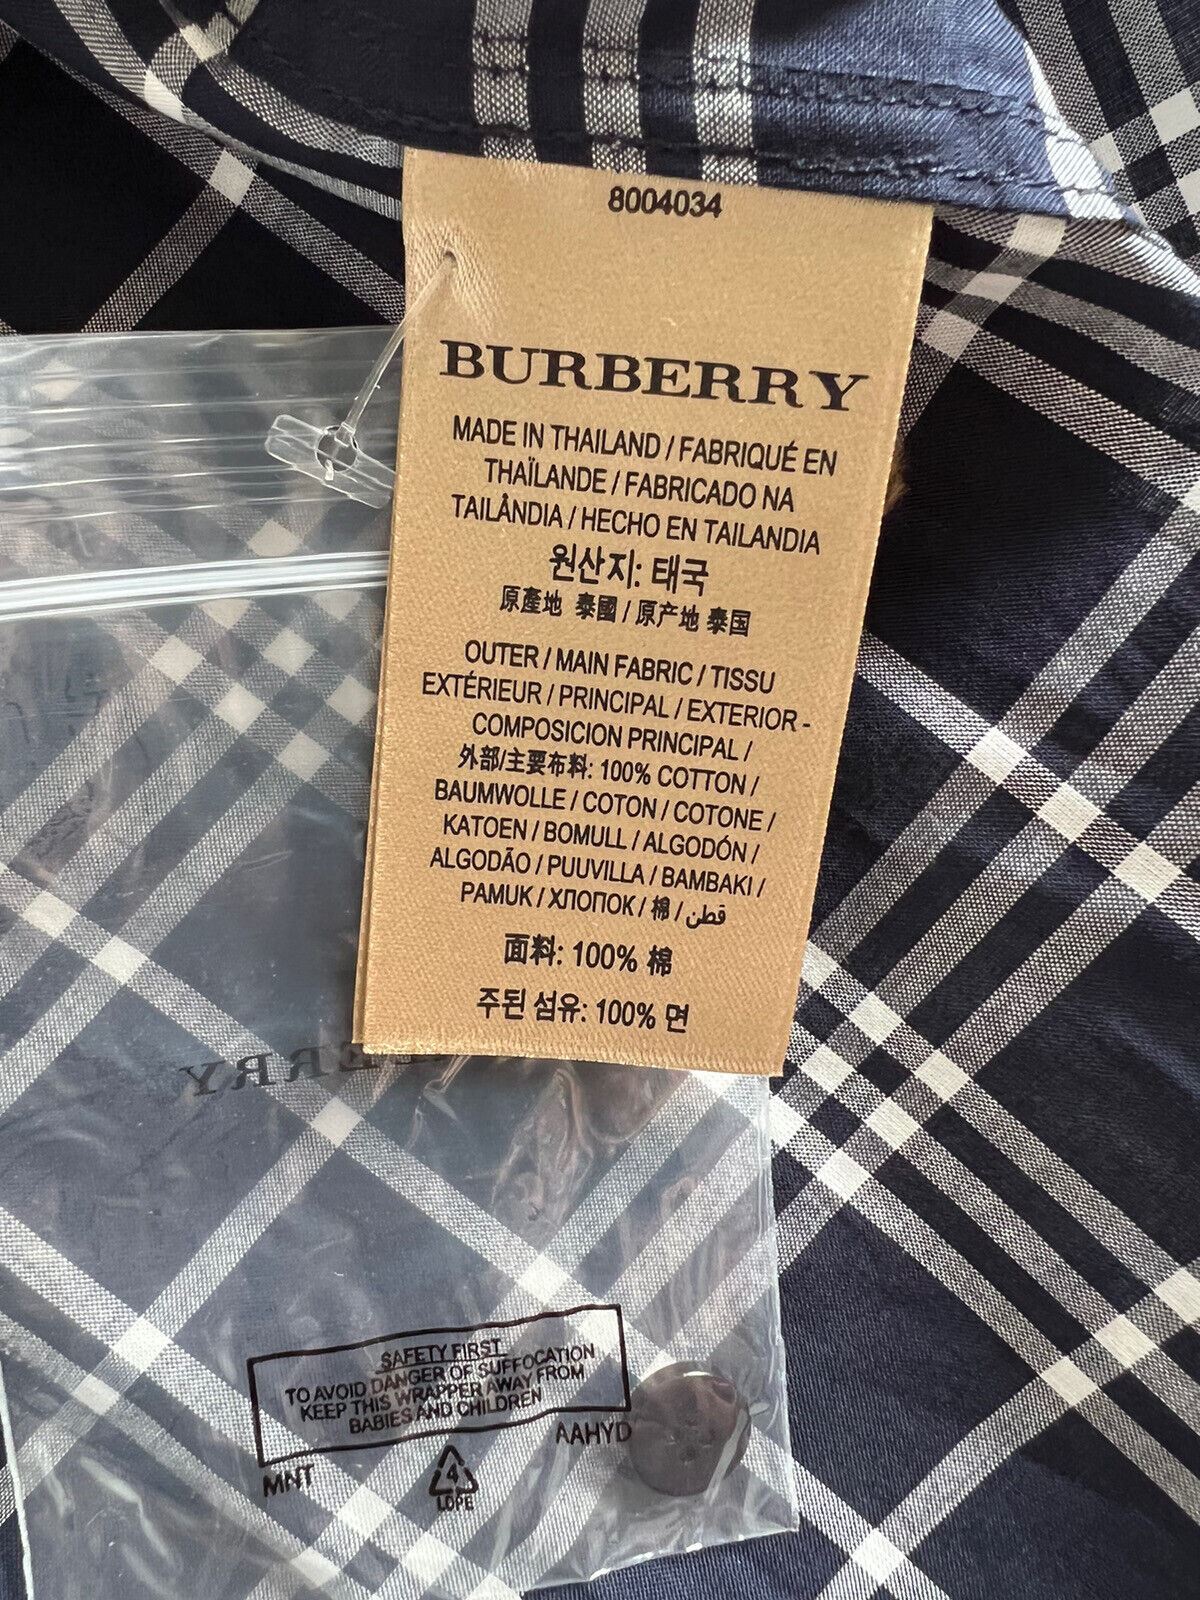 Neu mit Etikett: 350 $ Burberry Marineblaues Karo-Knopfhemd für Damen, 2 US (4 UK) 